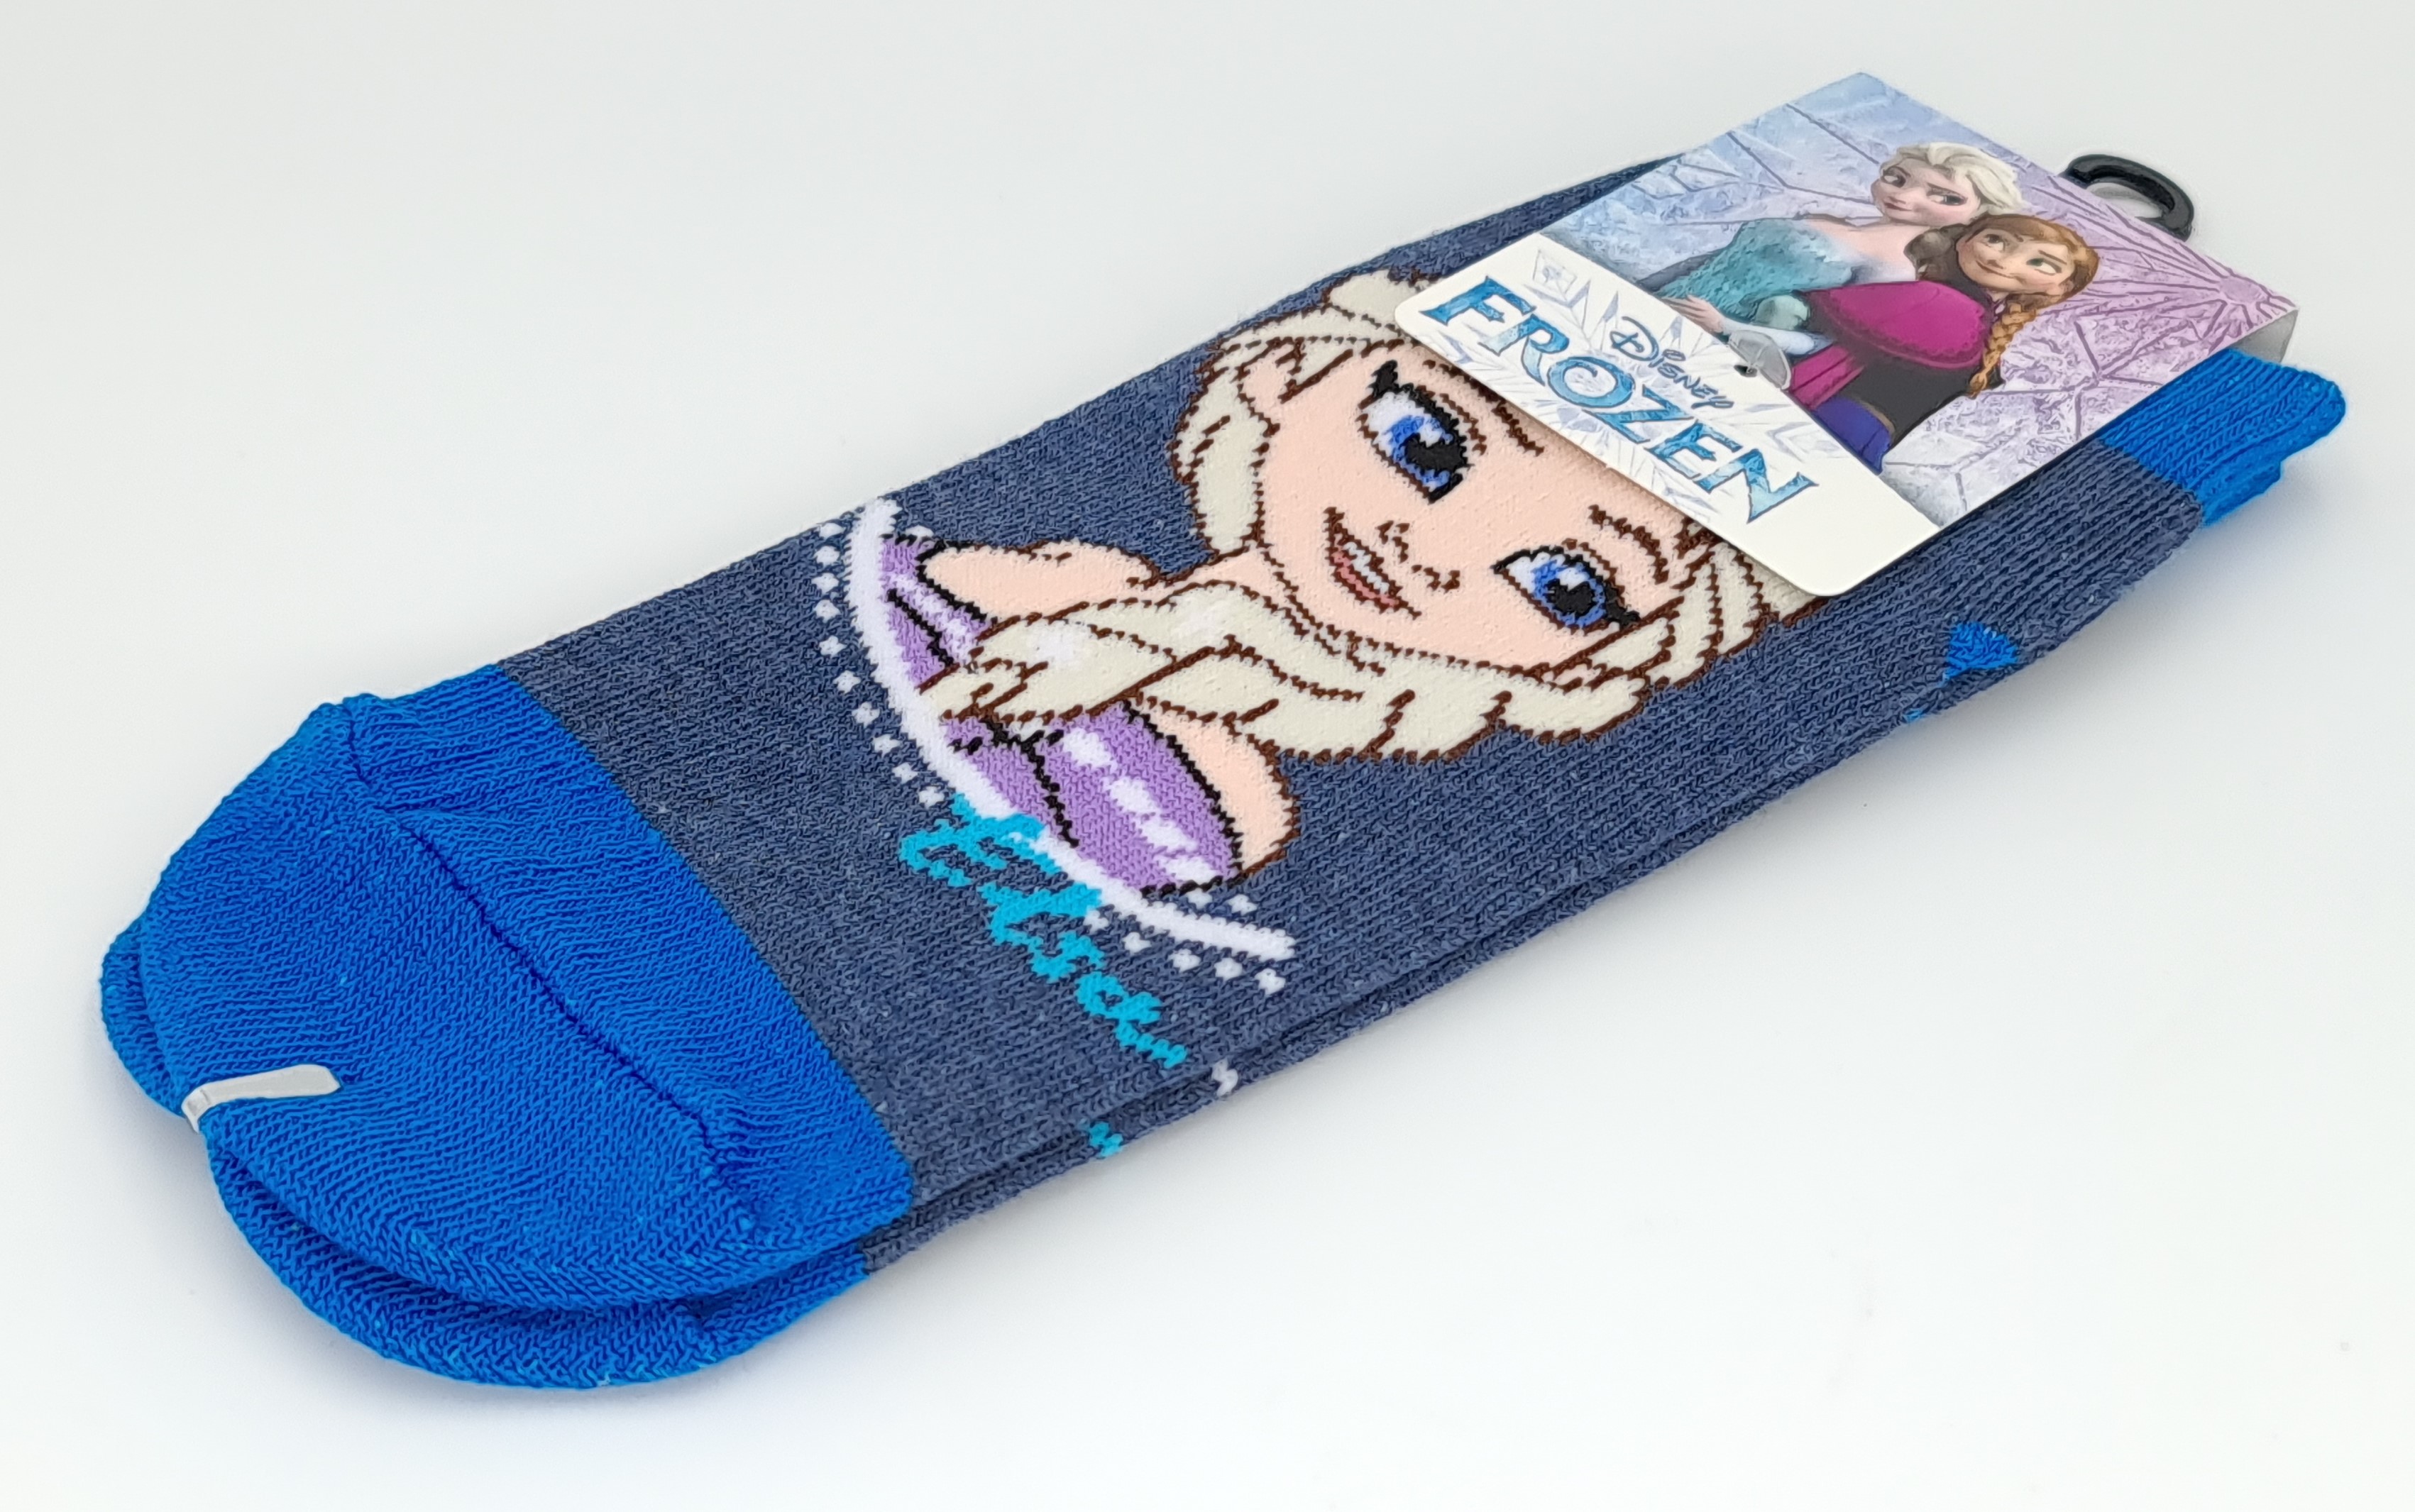 ถุงเท้า Disney Frozen ถุงเท้าลิขสิทธิ์ สีสันสดใส